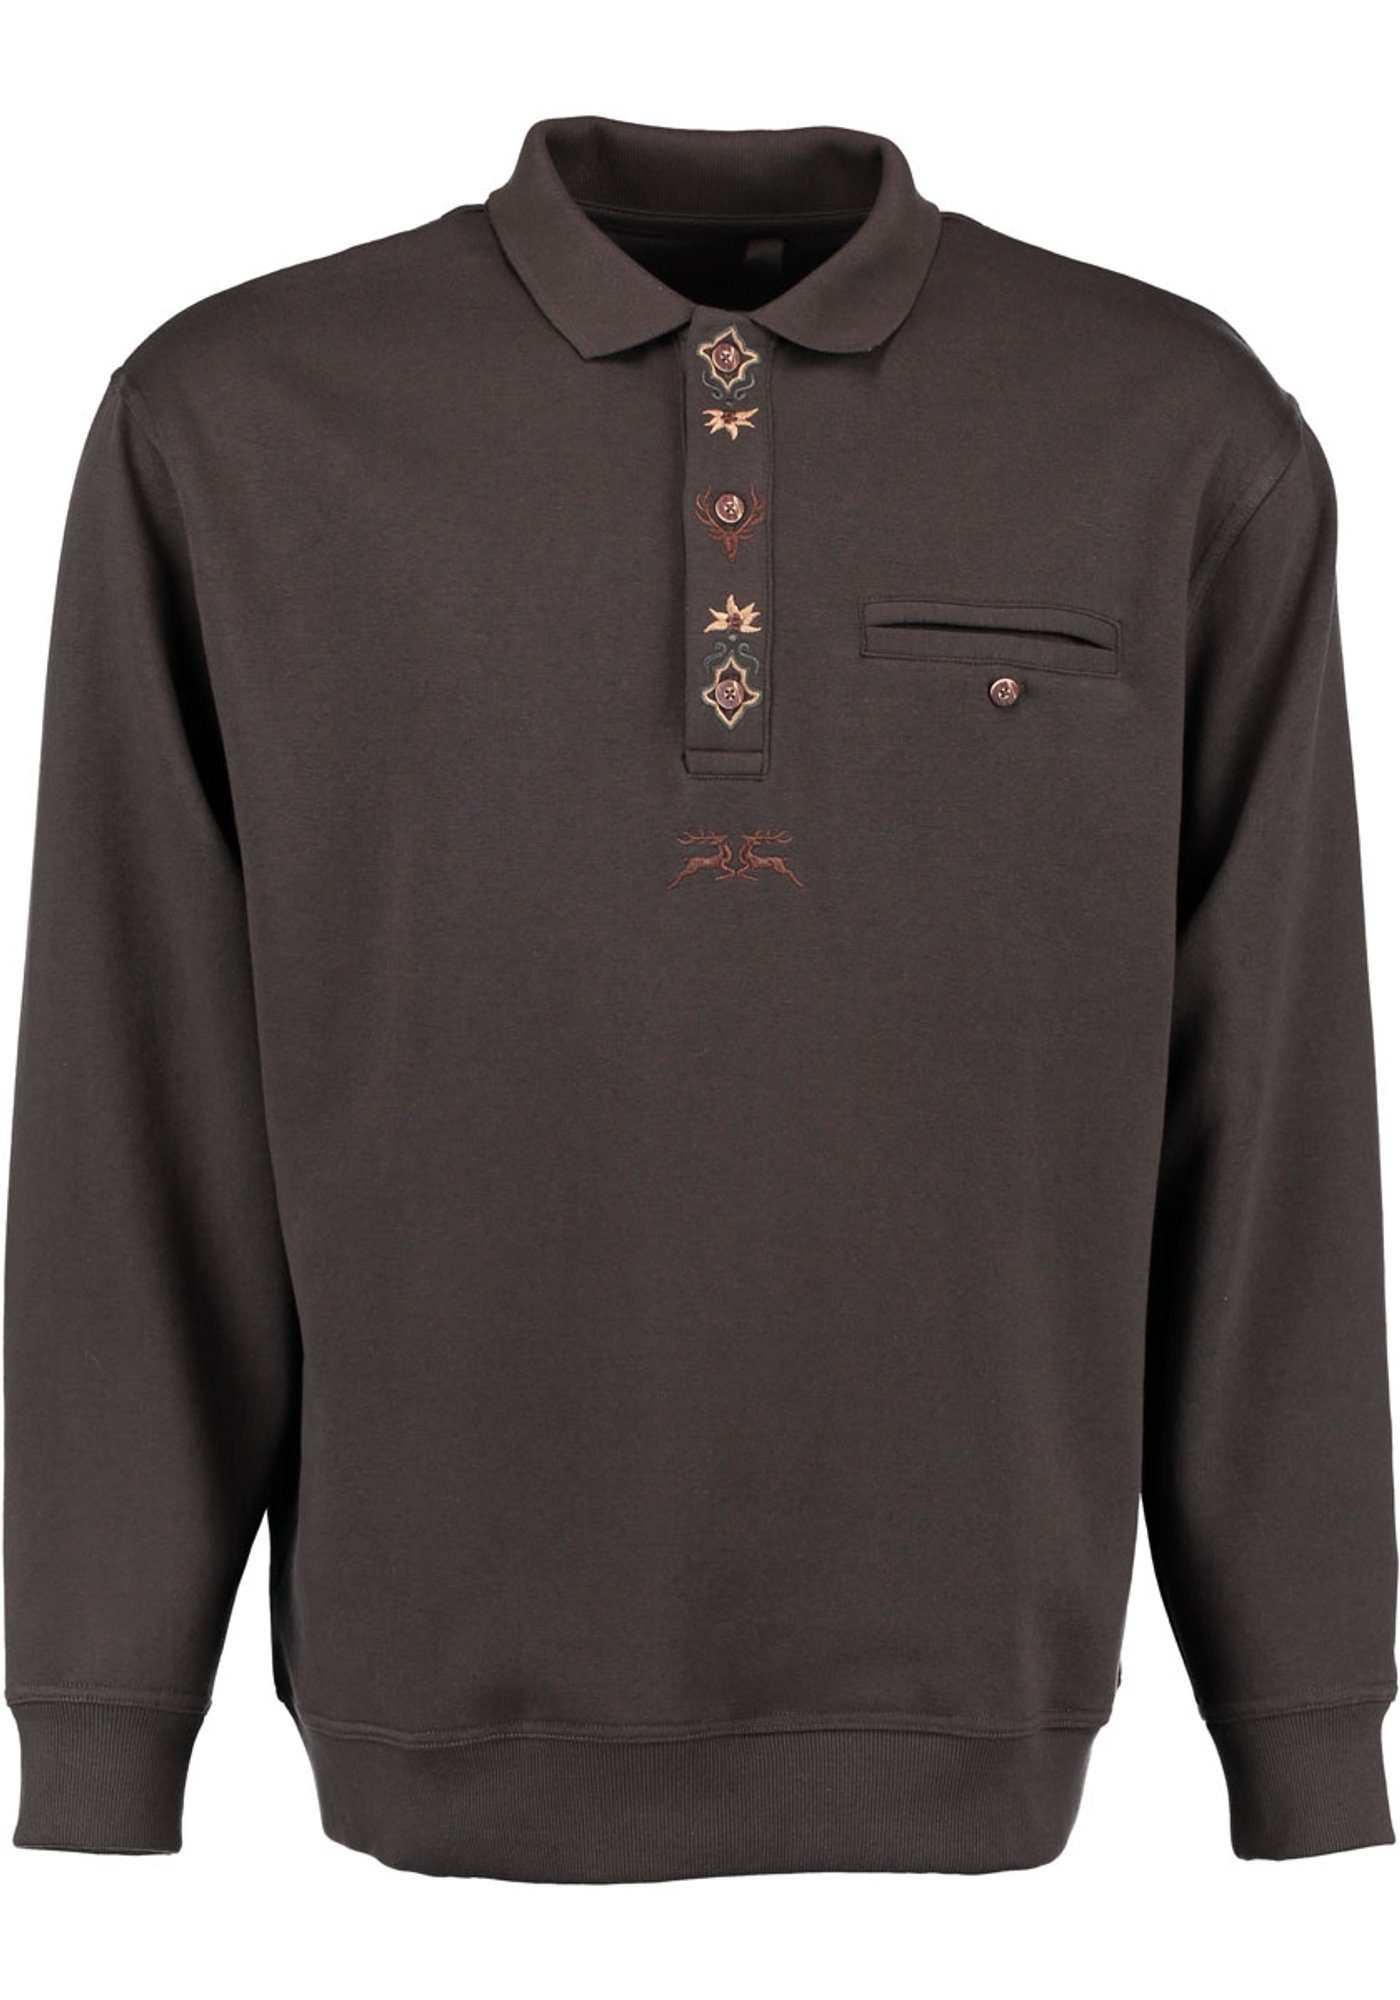 OS-Trachten Sweatshirt Shuro Jagdsweatshirt mit und Knopfleiste Liegekragen der Stickereien auf